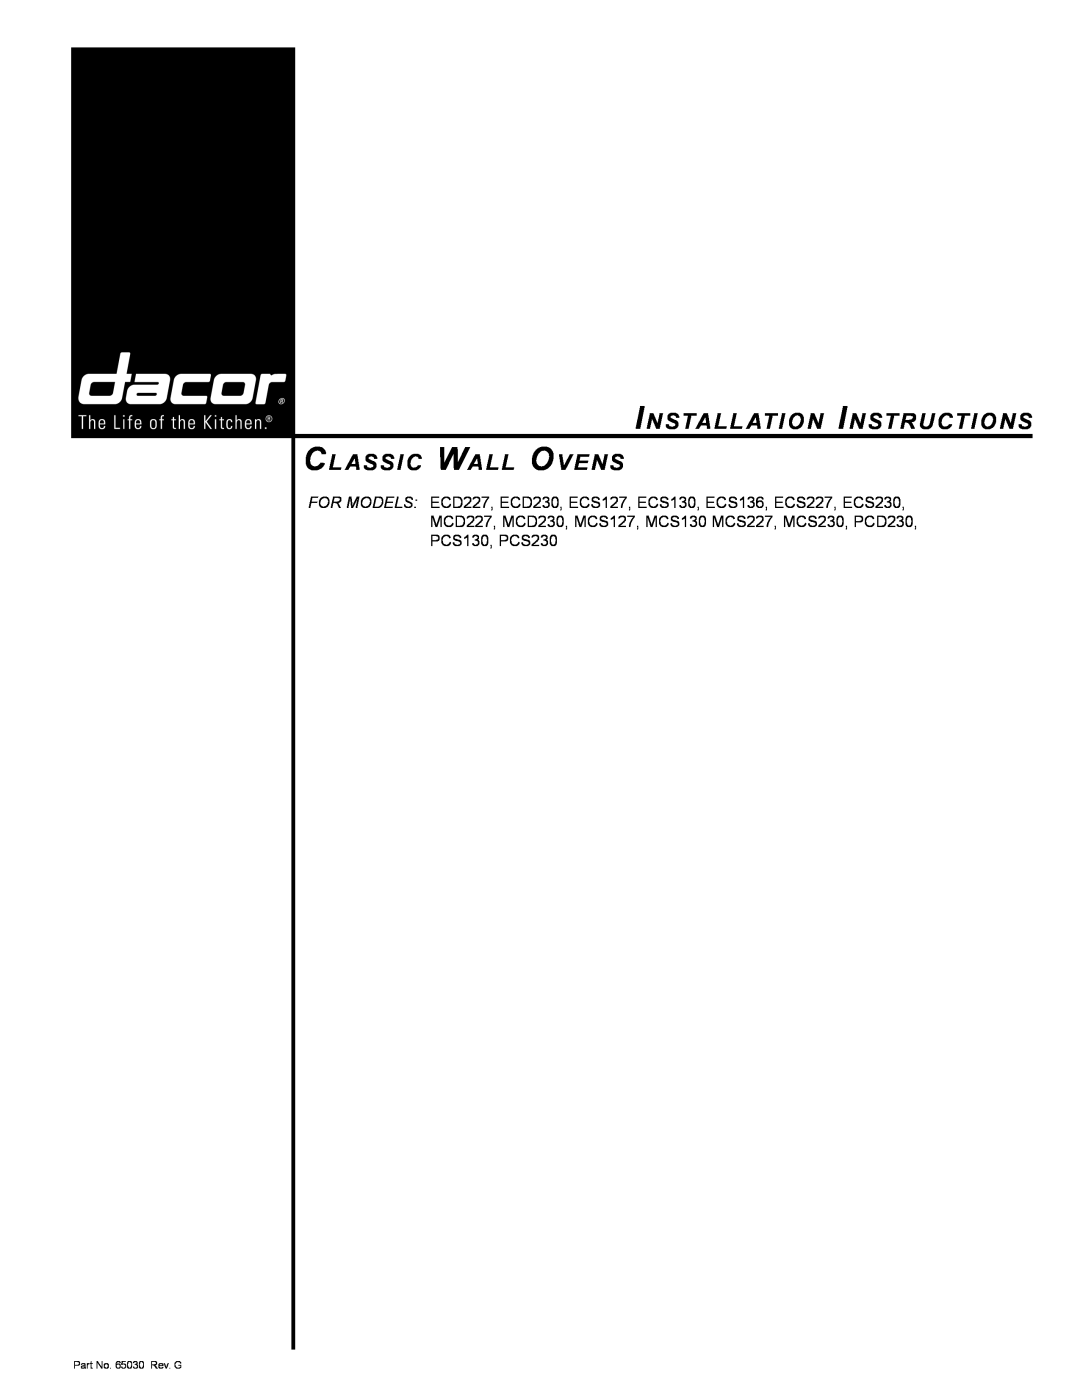 Dacor MCD230, MCD227, ECS130 installation instructions Installation Instructions Classic Wall Ovens, Part No. 65030 Rev. G 